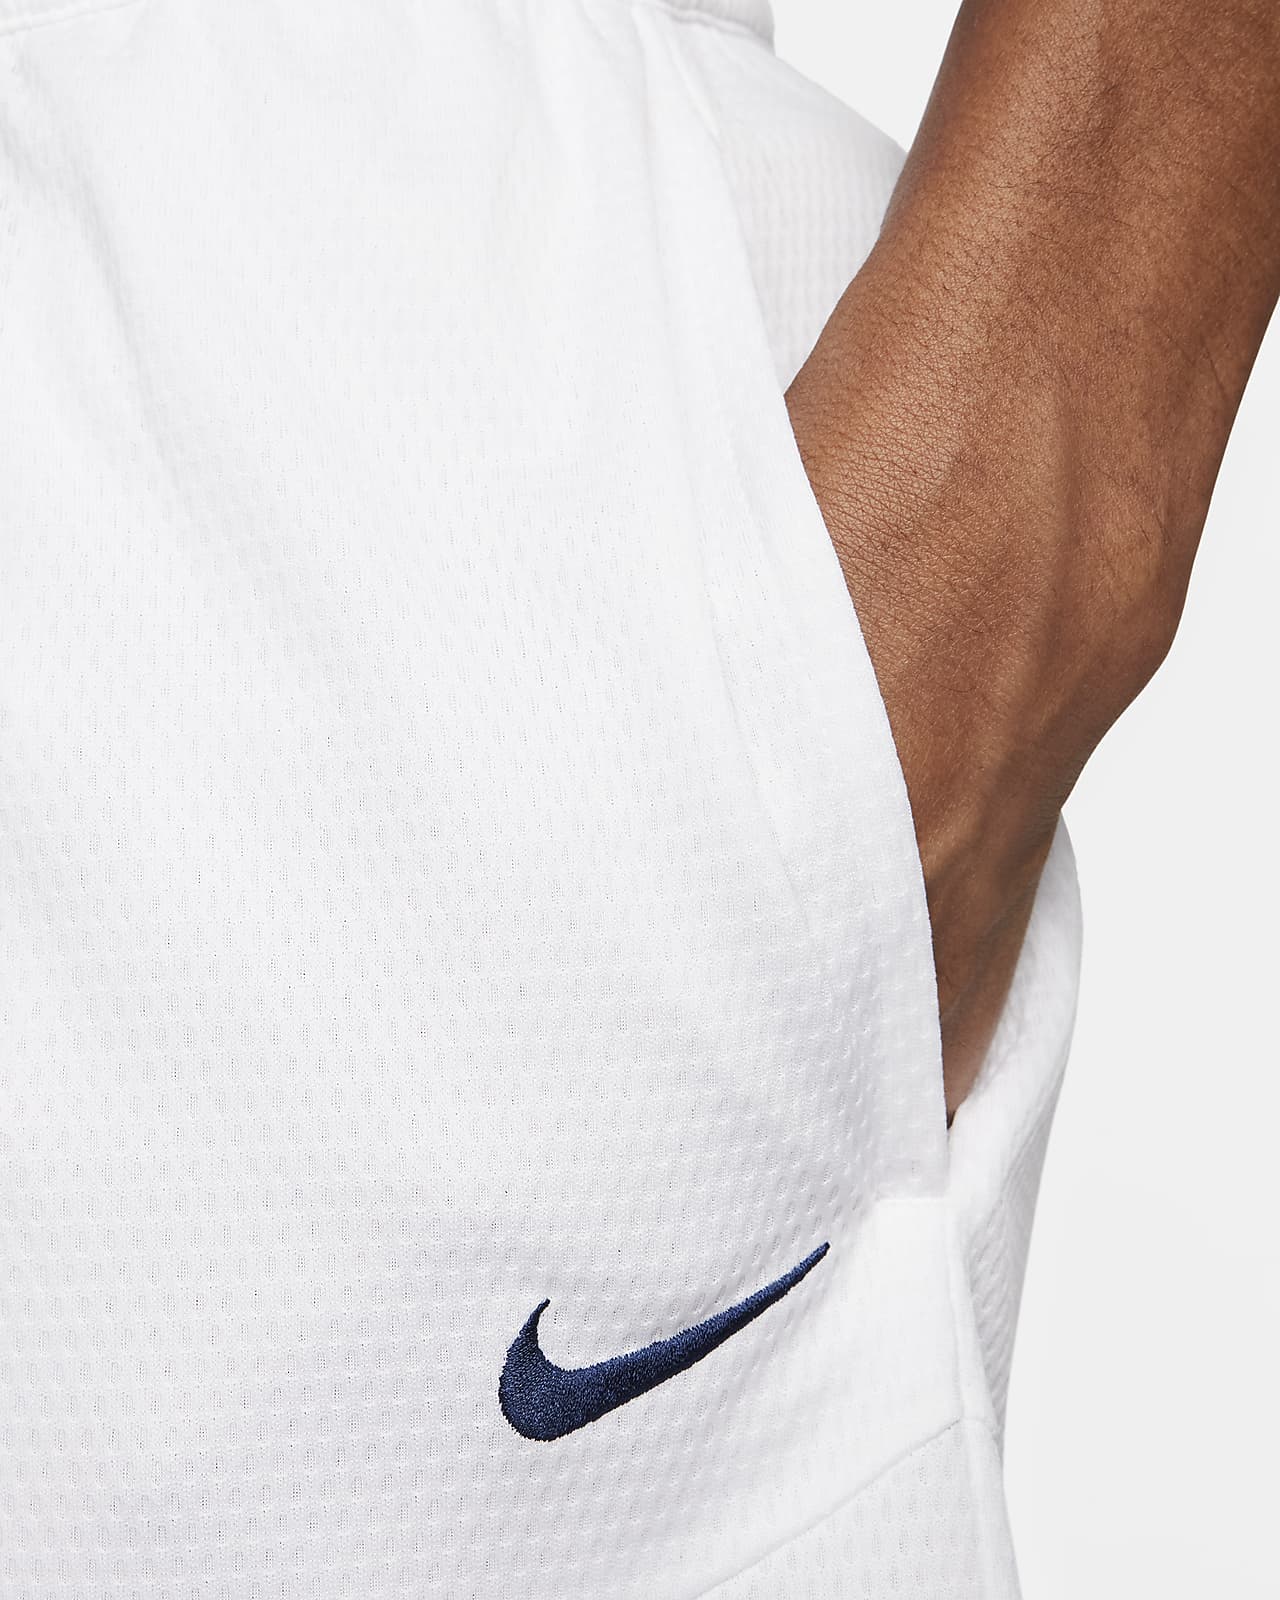 Le short de compression logo iconique, Nike